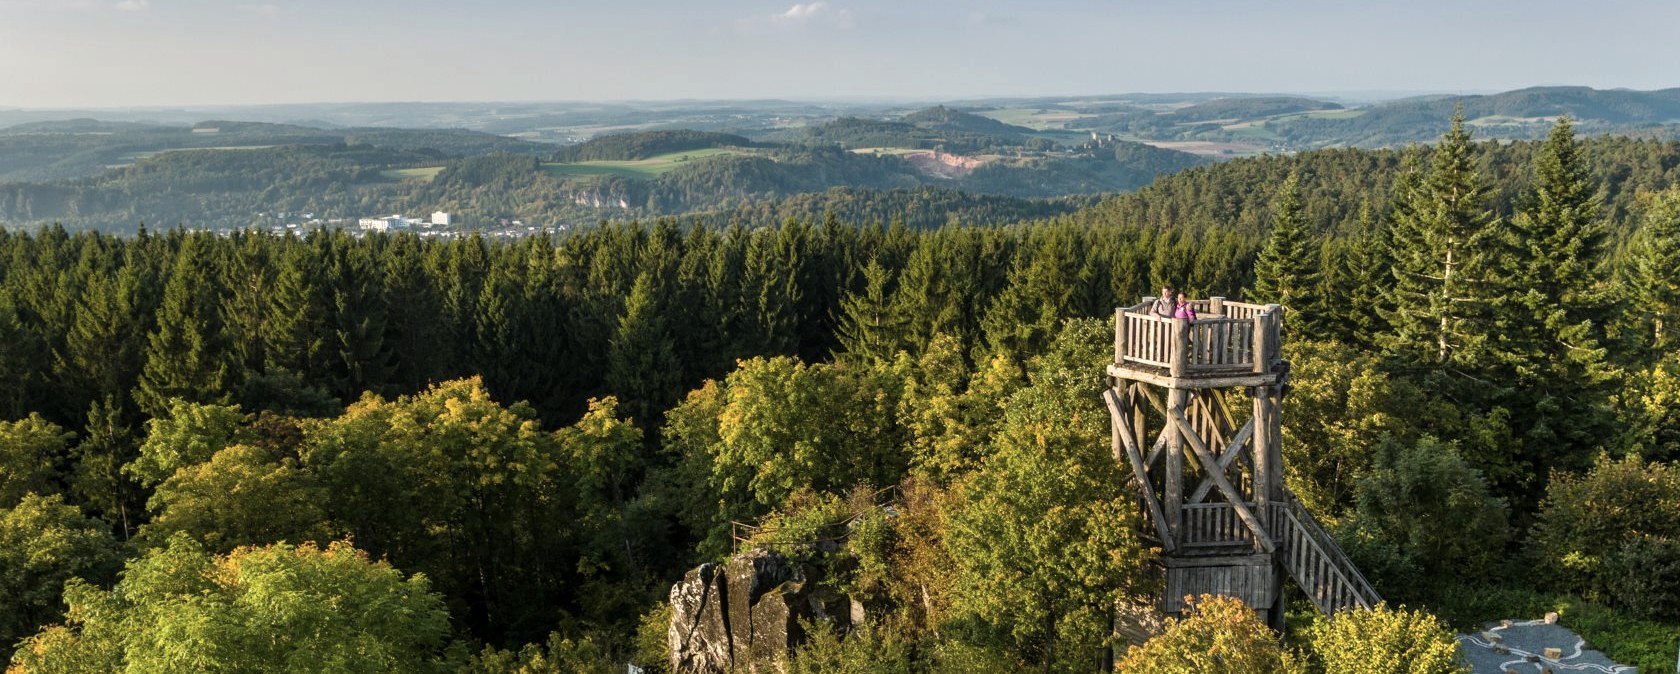 Aussichtsturm Dietzenley, © Eifel Tourismus GmbH, D. Ketz